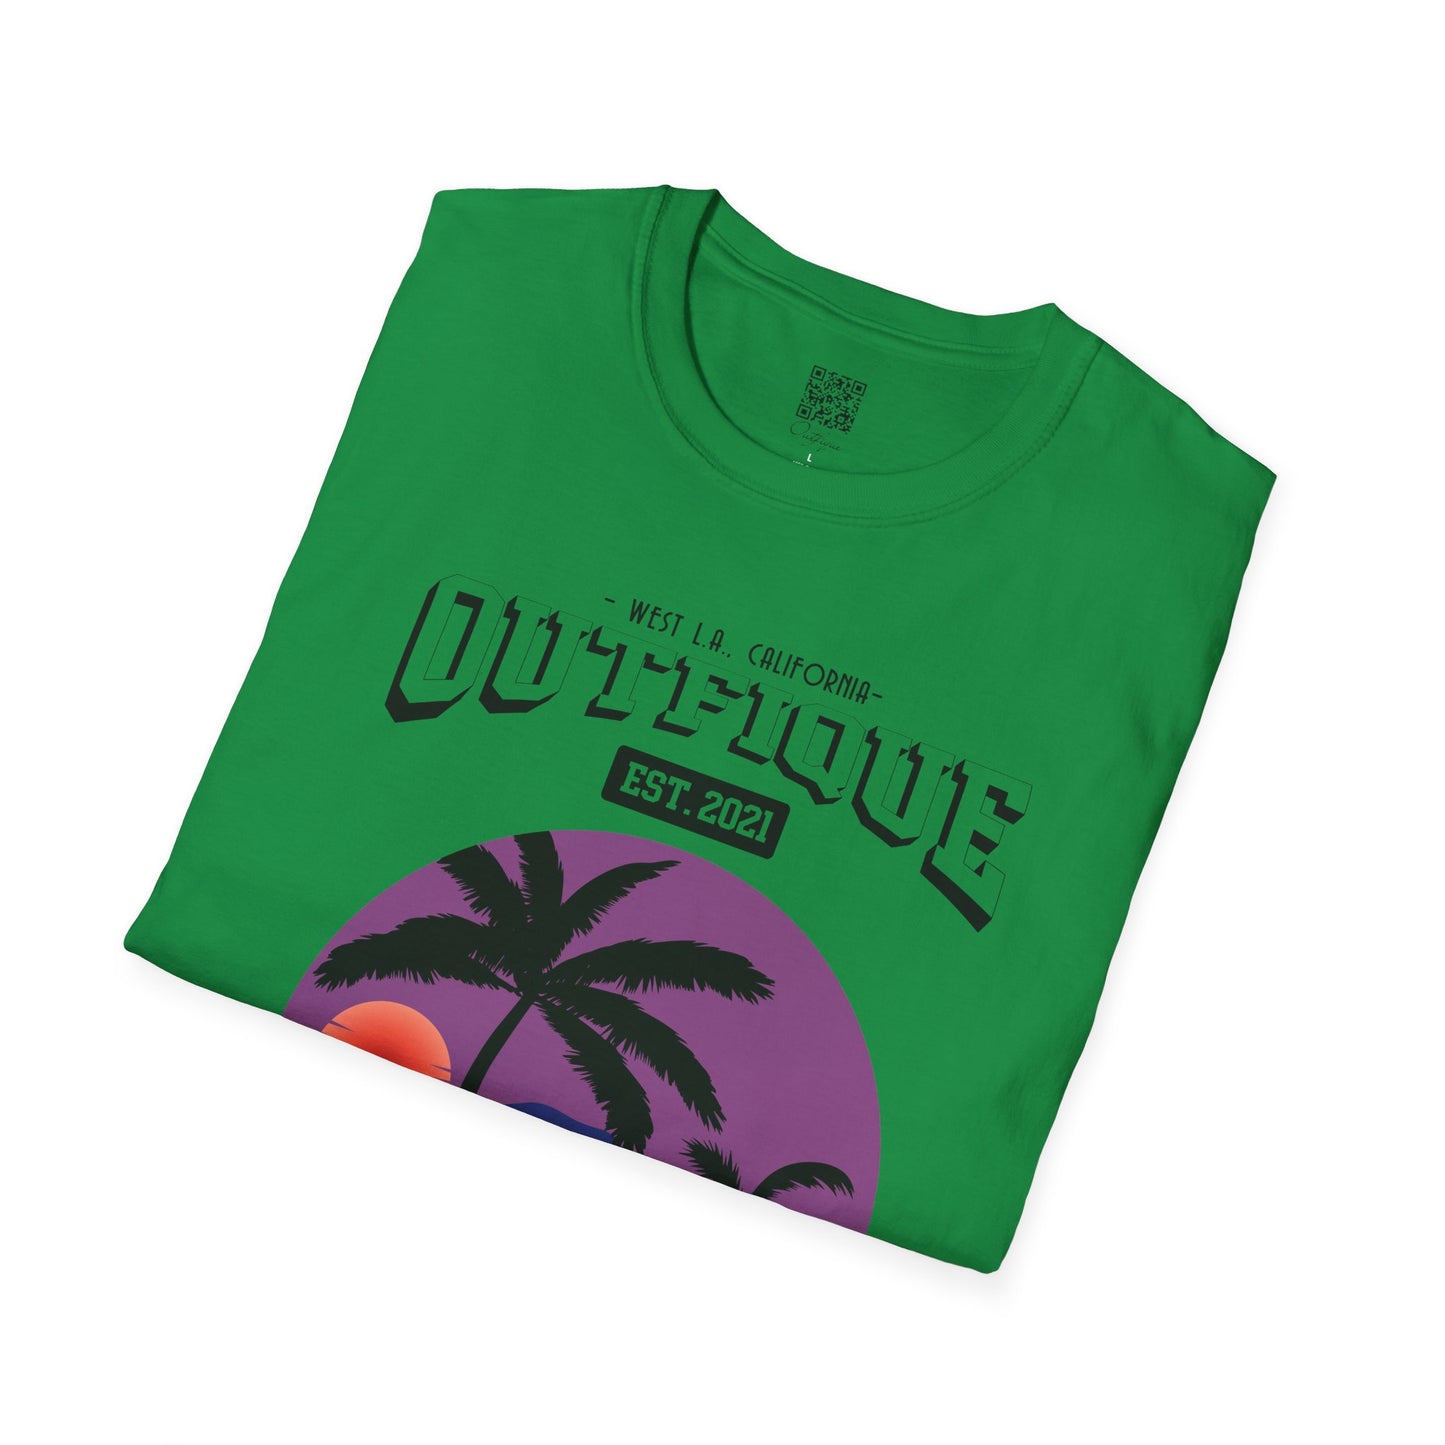 WEST L.A. T-Shirt | Outfique | T-Shirt | Crew neck